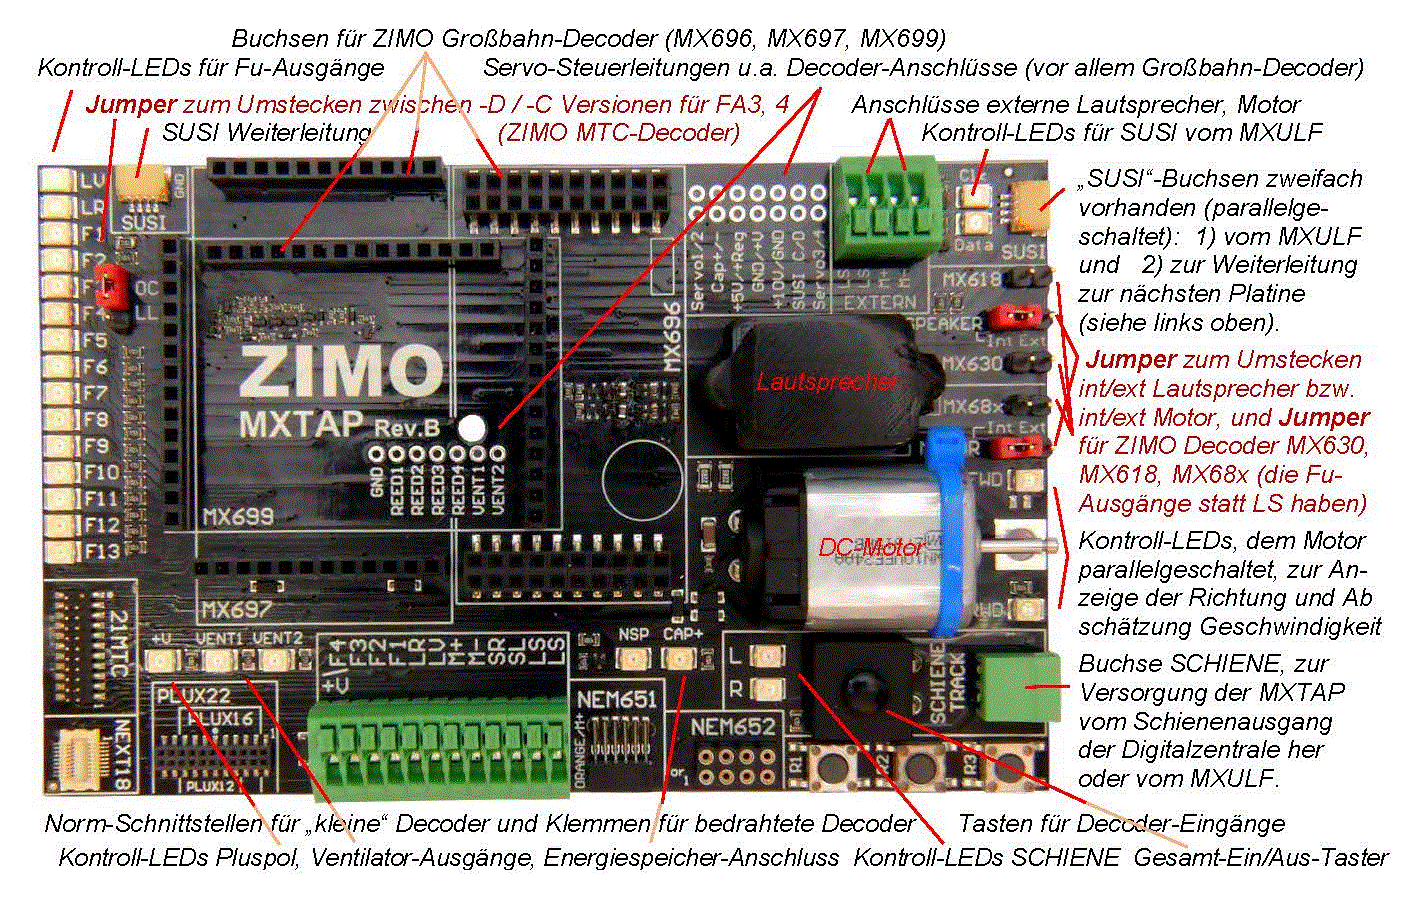 und Anschlussplatine für alle kleinen Decoder NEU ZIMO MXTAPS Decodertest 